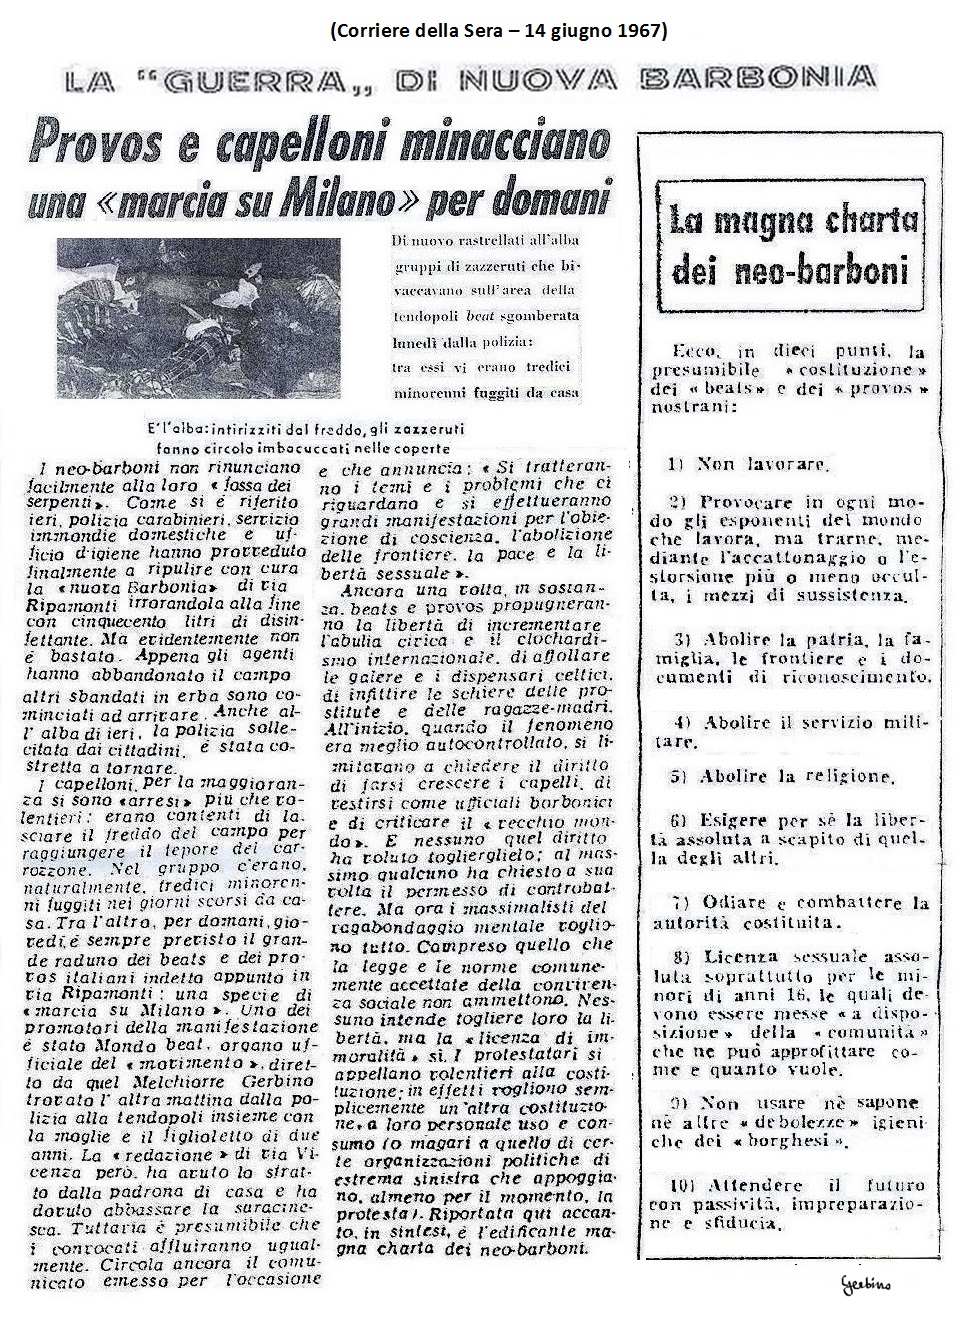 Al Corriere della Sera, con reminescenze di stile fascista, paventavano una 'Marcia su Milano'.